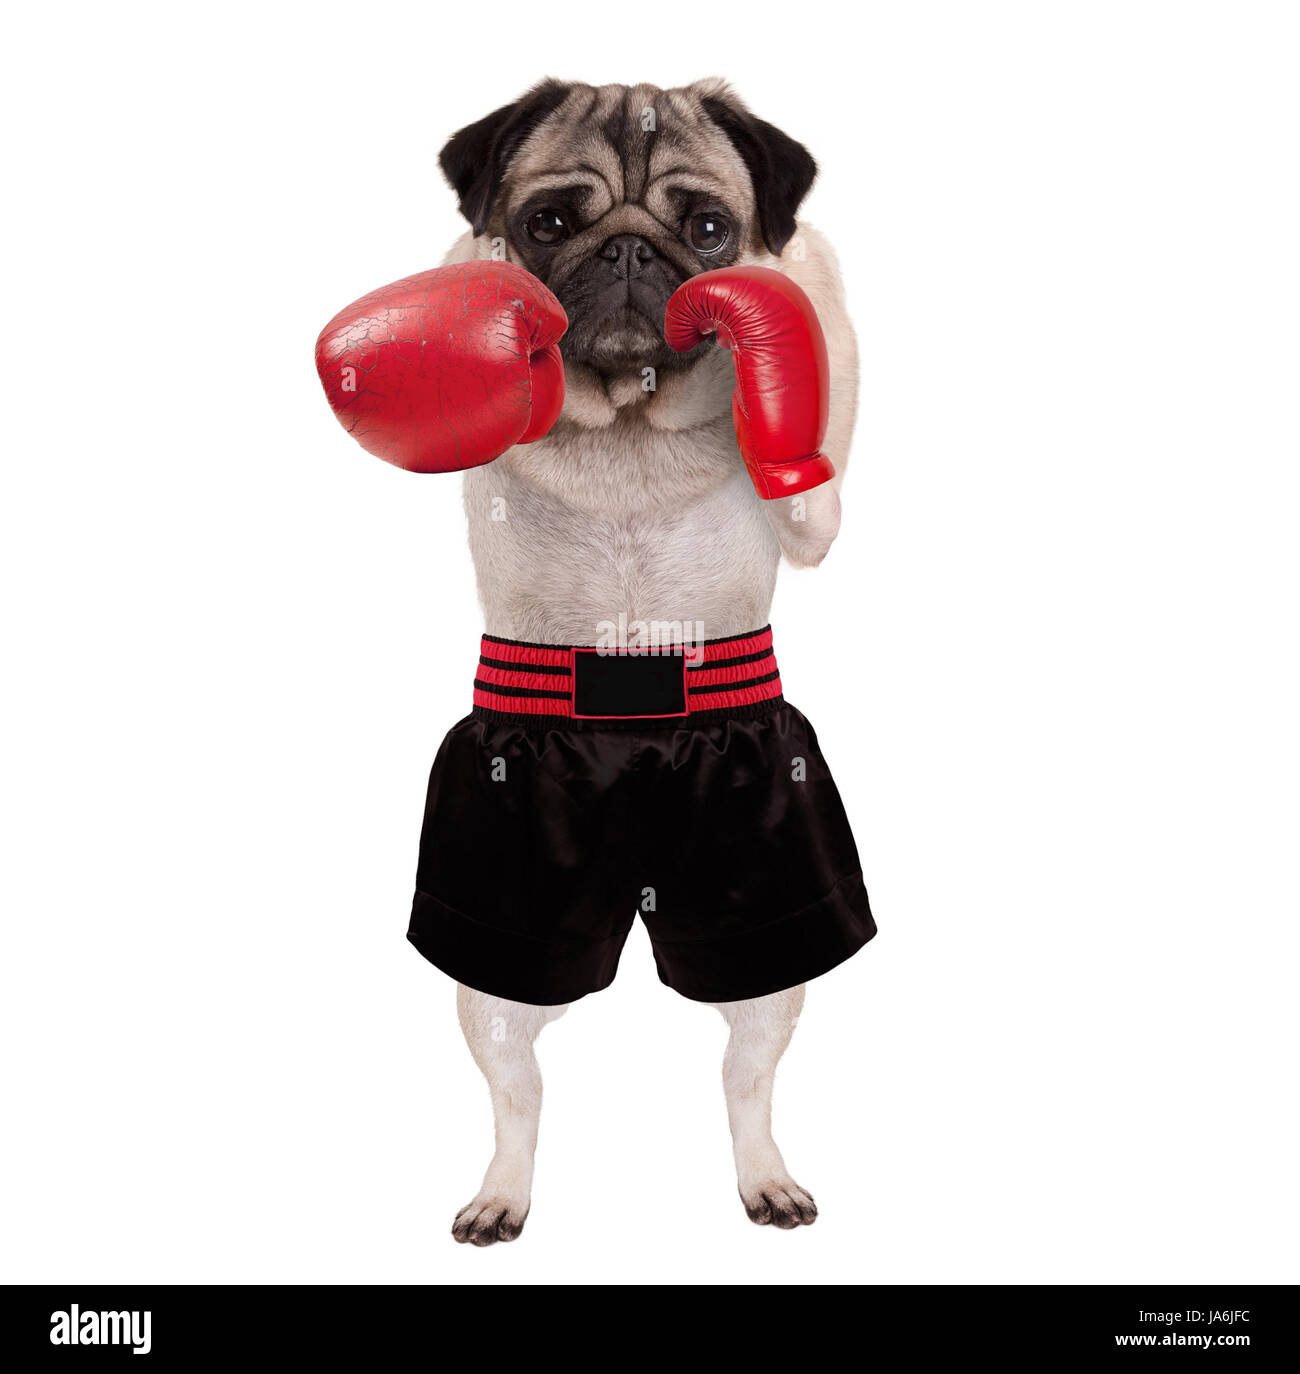 Cool boxer perro pug permanente puñetazos con guantes de boxeo de cuero rojo y shorts, aislado sobre fondo blanco. Foto de stock